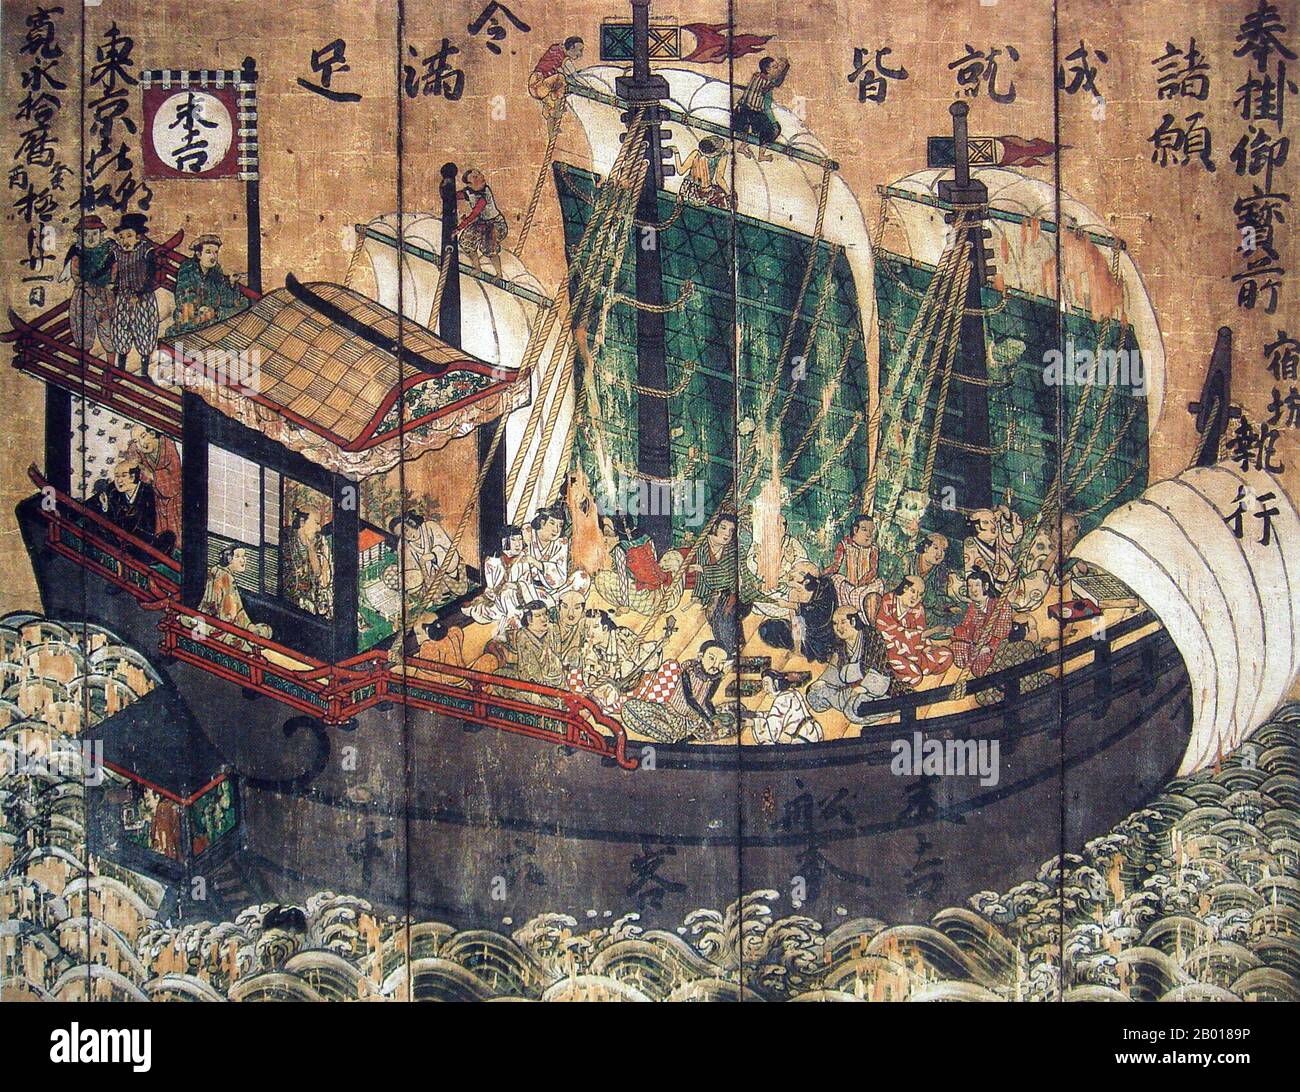 Japan: Sueyoshi Rotsiegelschiff mit ausländischen Piloten und Matrosen. Eine Holztafel Gemälde aus Kiyomizu-dera Tempel, Kyoto, c. 1633. Shuinsen, oder "Red Seal Ships", waren japanische bewaffnete Handelsschiffe, die mit einem rot versiegelten Patent, das vom frühen Tokugawa-Shogunat in der ersten Hälfte des 17th. Jahrhunderts ausgestellt wurde, nach südostasiatischen Häfen fuhren. Zwischen 1600 und 1635 gingen mehr als 350 japanische Schiffe im Rahmen dieses Genehmigungssystems nach Übersee. Japanische Händler exportierten hauptsächlich Silber, Diamanten, Kupfer, Schwerter und andere Artefakte und importierten chinesische Seide sowie einige südostasiatische Produkte wie Zucker. Stockfoto